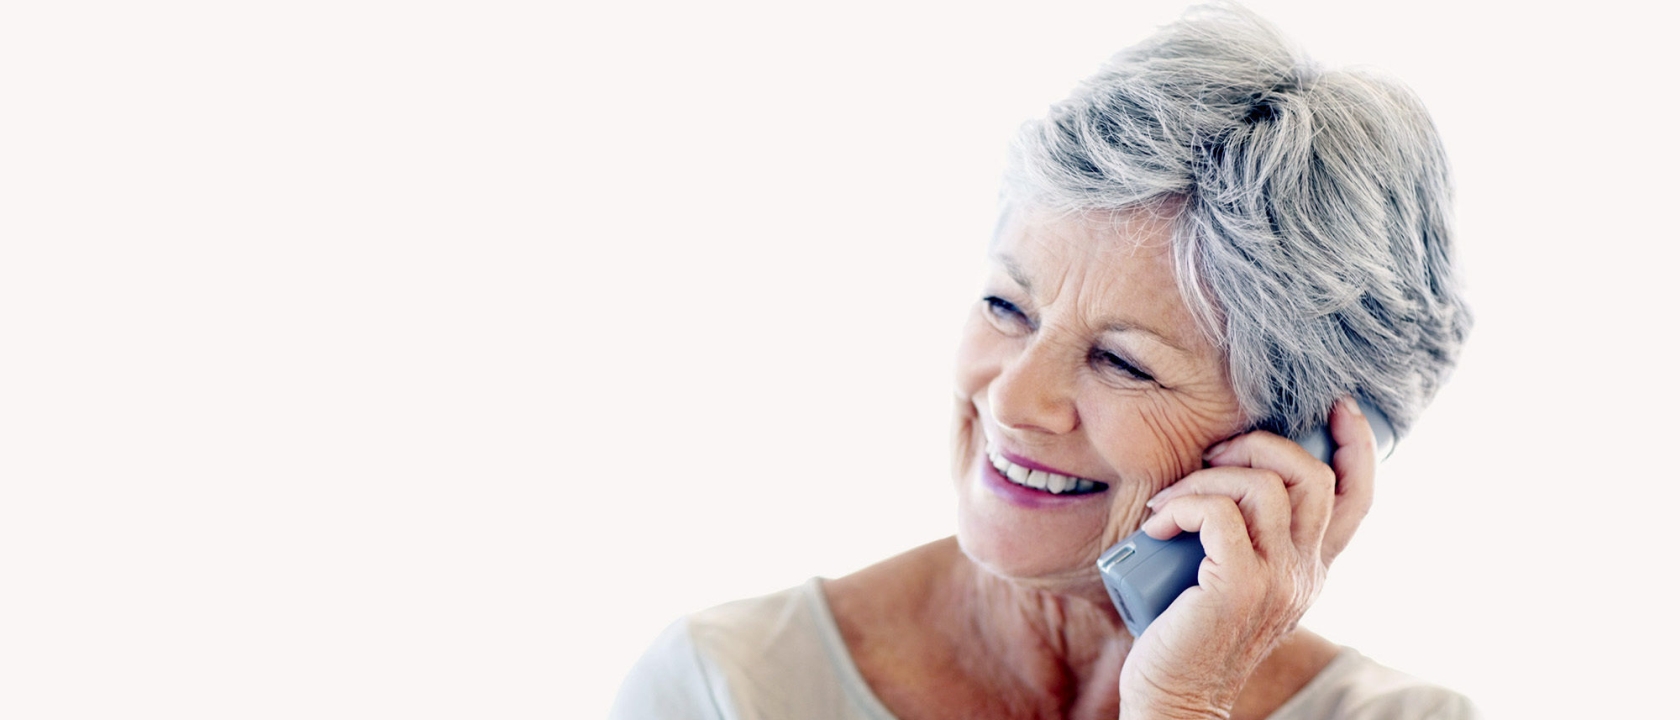 Smiling senior woman using cordless phone at home